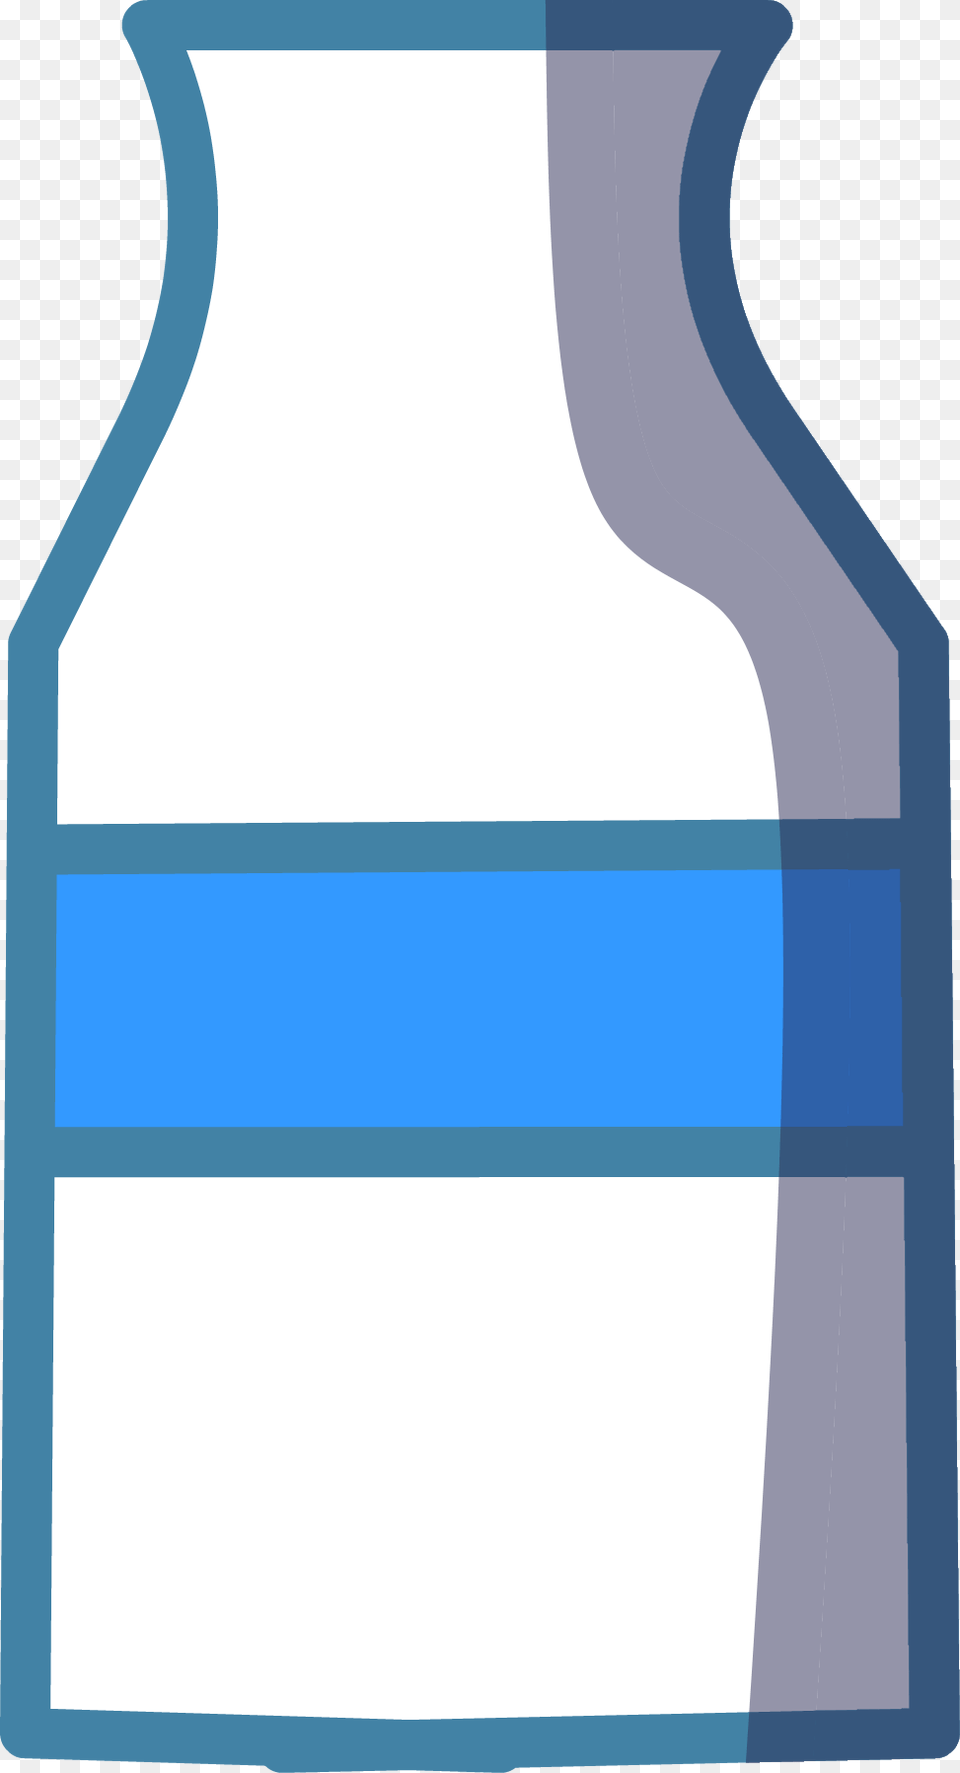 Milk Bottle Milk, Beverage, Jar Free Transparent Png